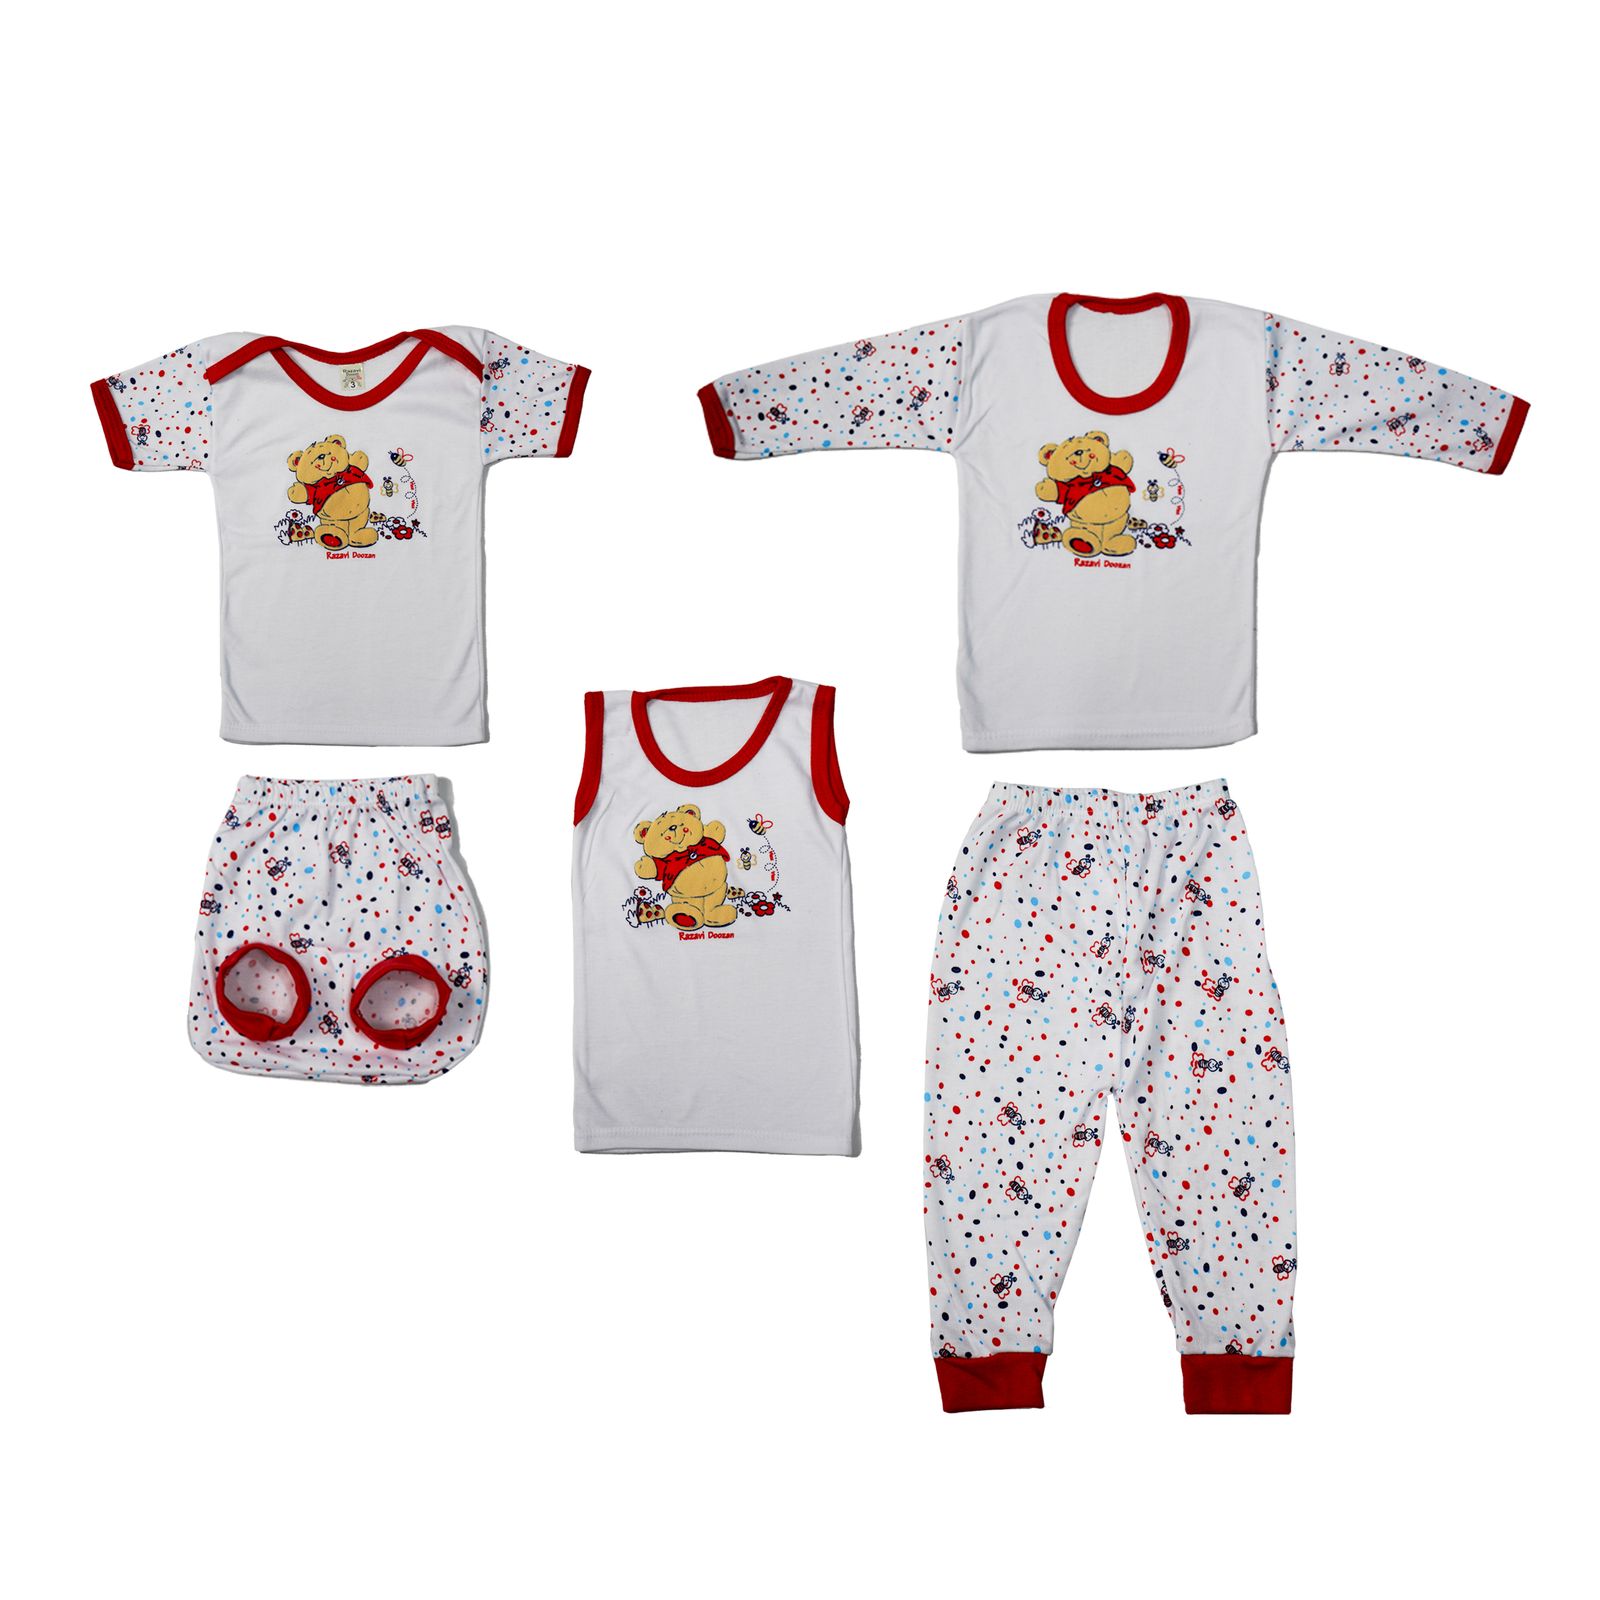 ست 5 تکه لباس نوزادی مدل خرس برجسته کد 1 رنگ قرمز -  - 1